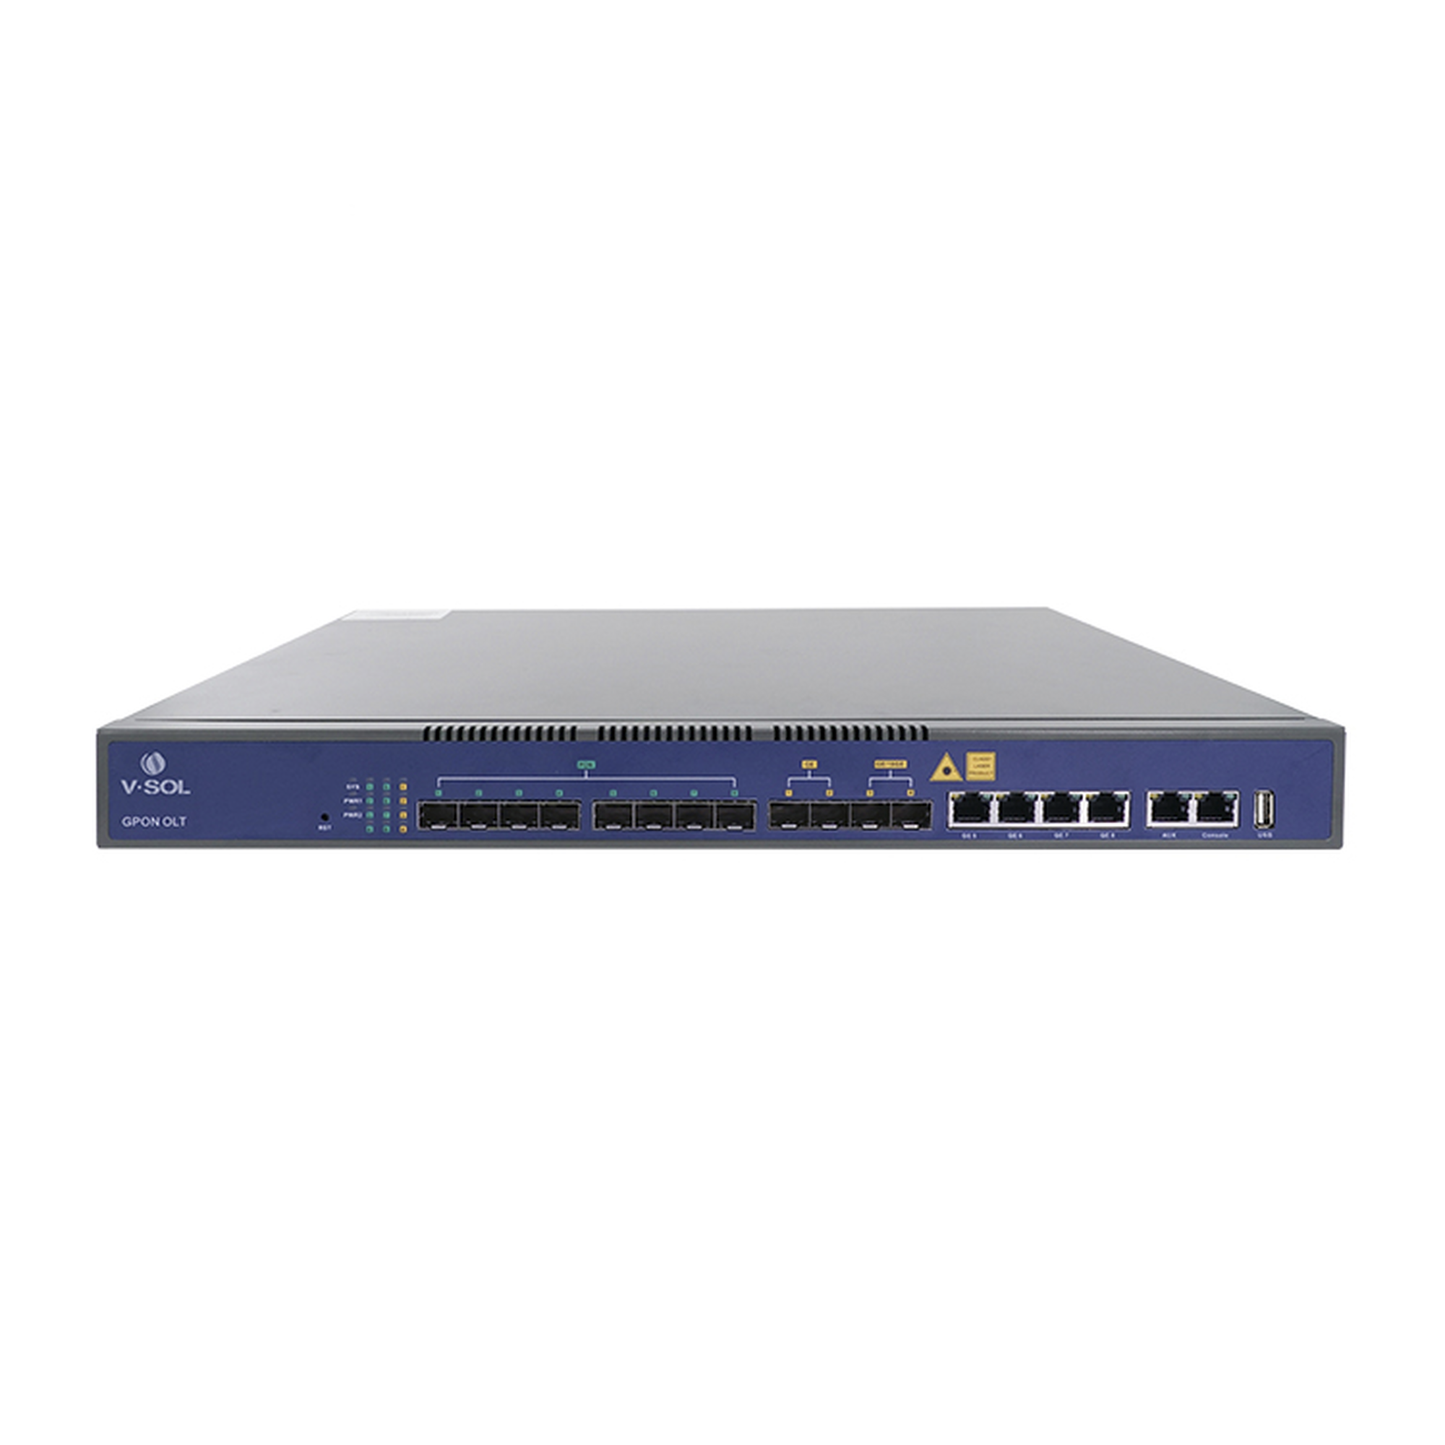 OLT de 8 puertos GPON con 8 puertos Uplink (4 puertos Gigabit Ethernet + 2 puertos SFP + 2 puertos SFP+) hasta 1,024 ONUs